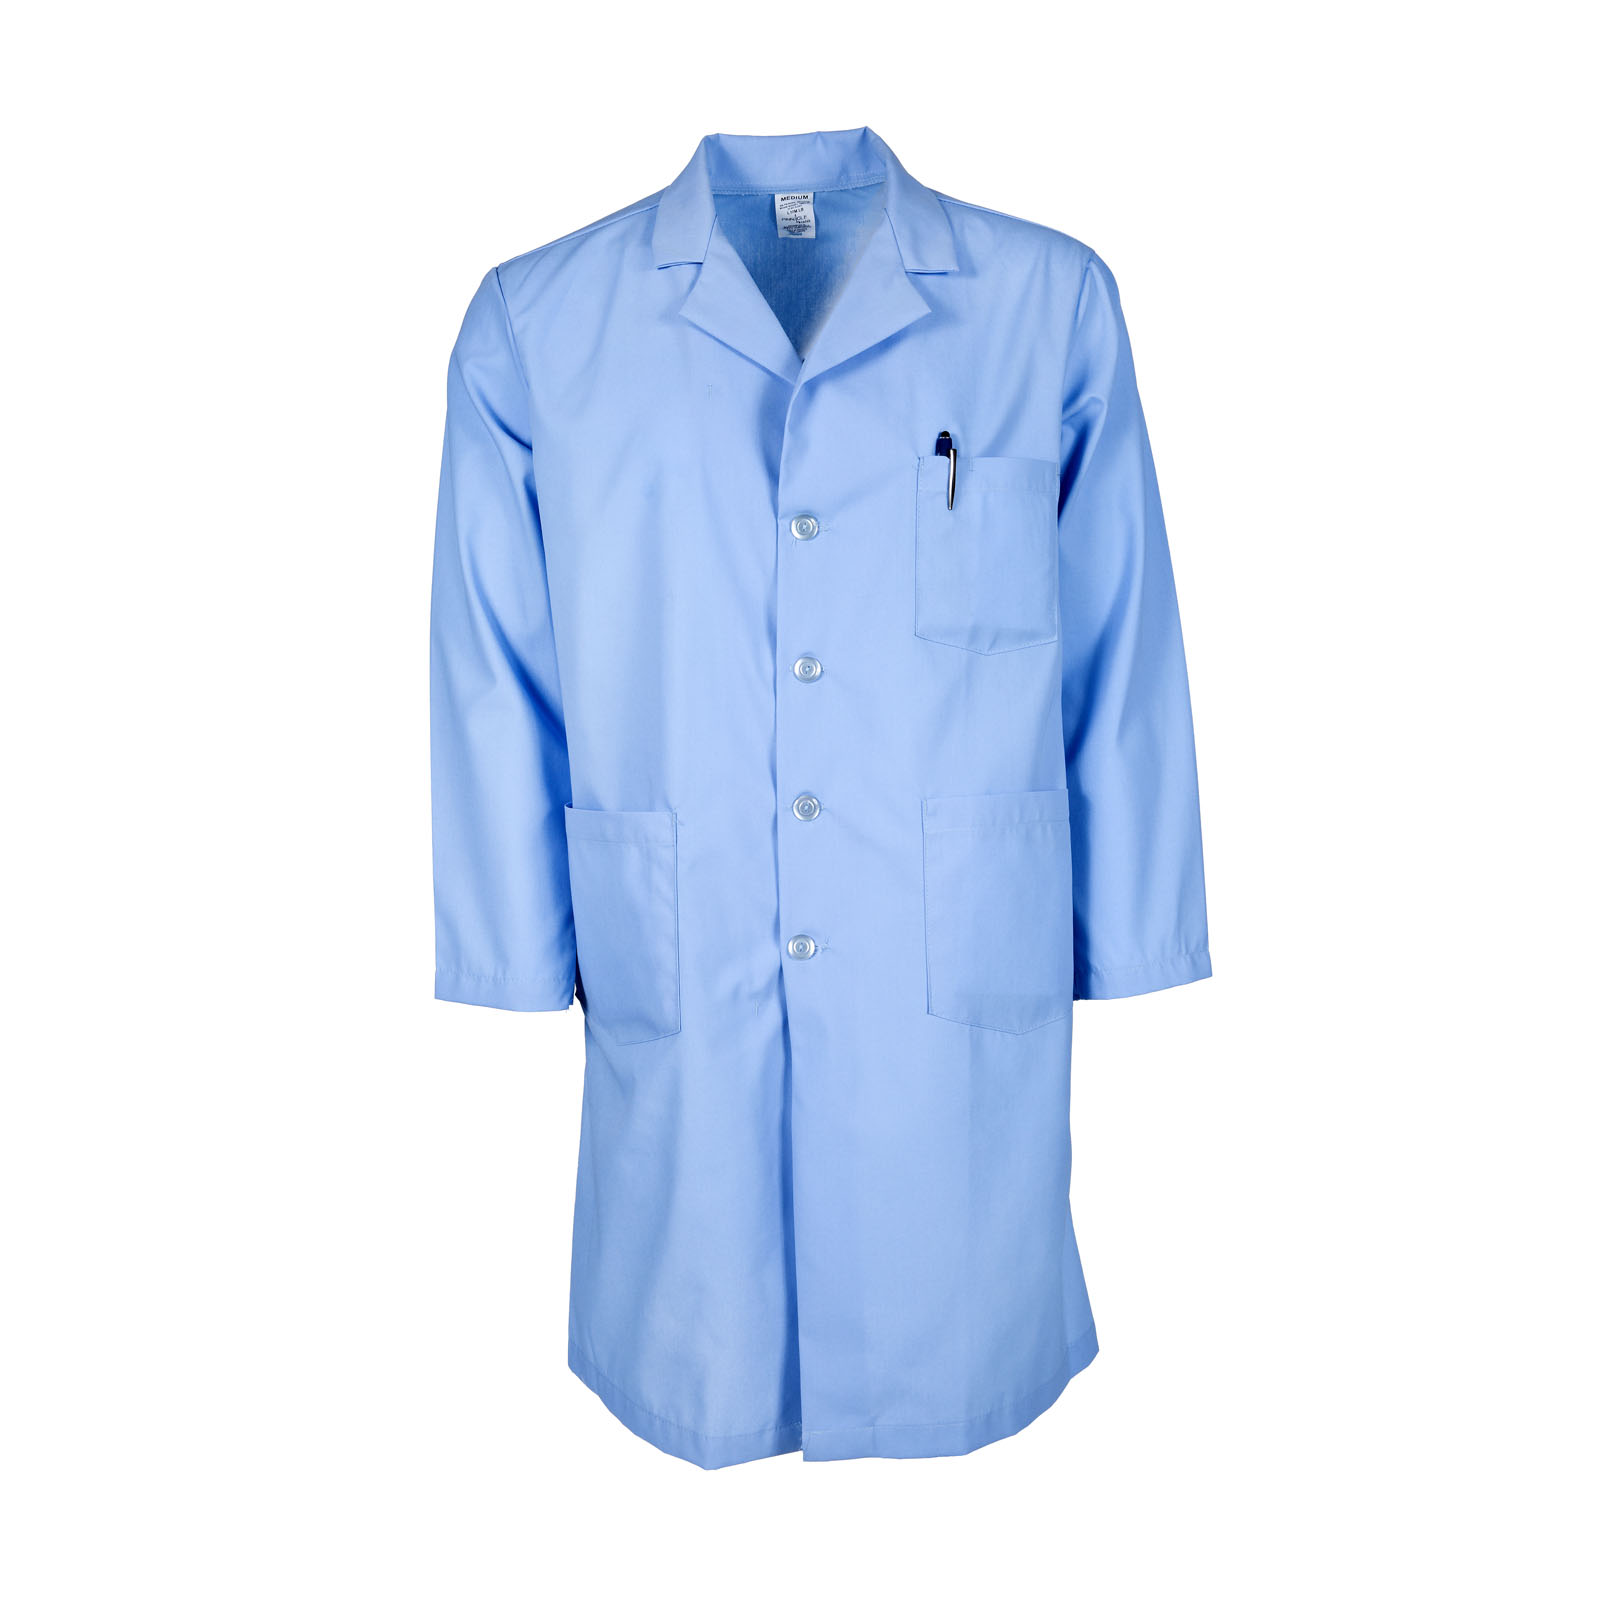 #L17M Pinnacle Textile Men's Lab Coat w/ Button Front, light blue